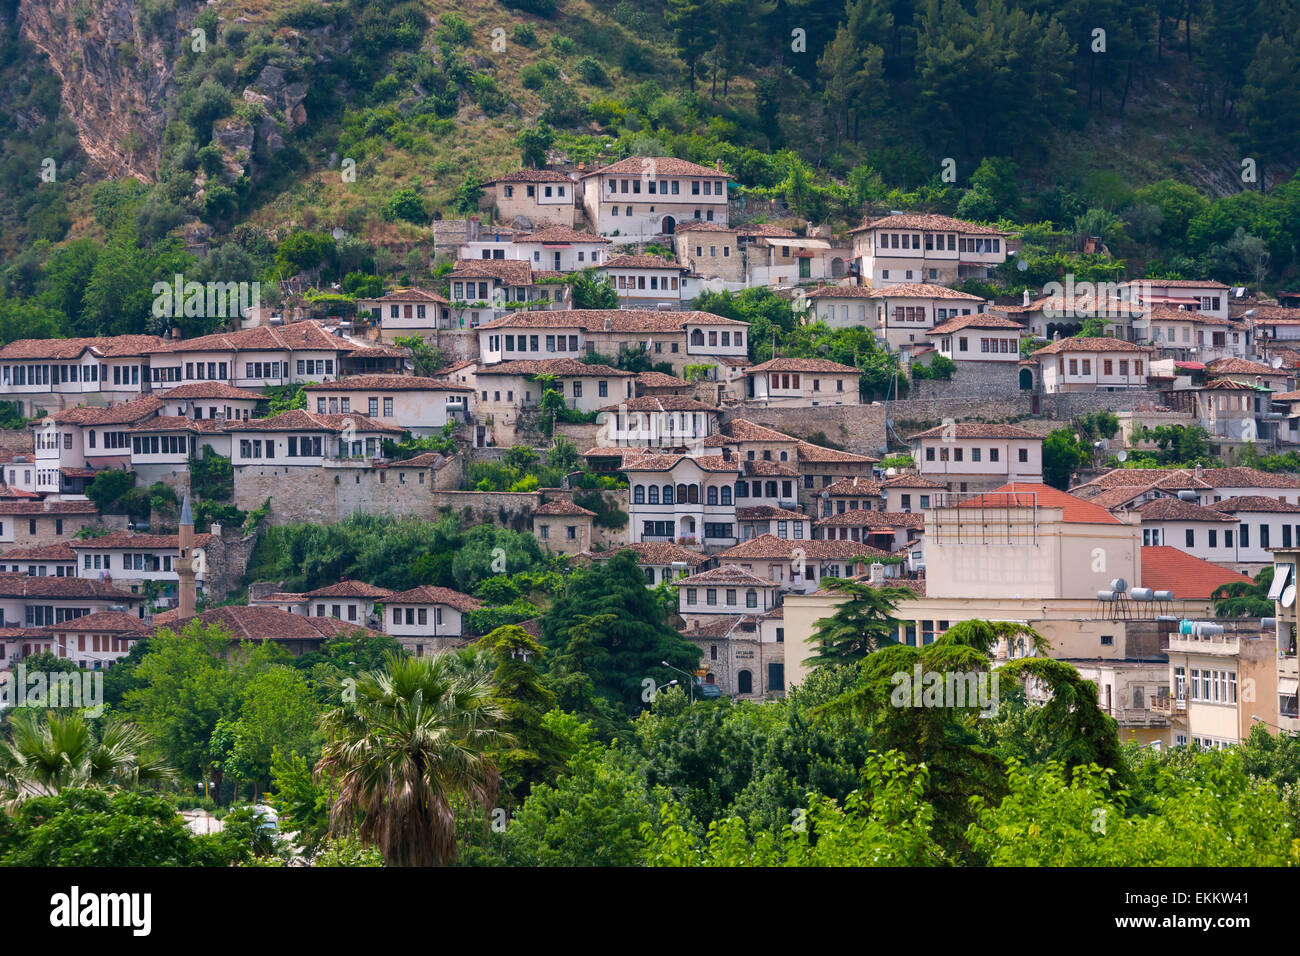 Berat vieille ville, site du patrimoine mondial de l'UNESCO, de l'Albanie Banque D'Images